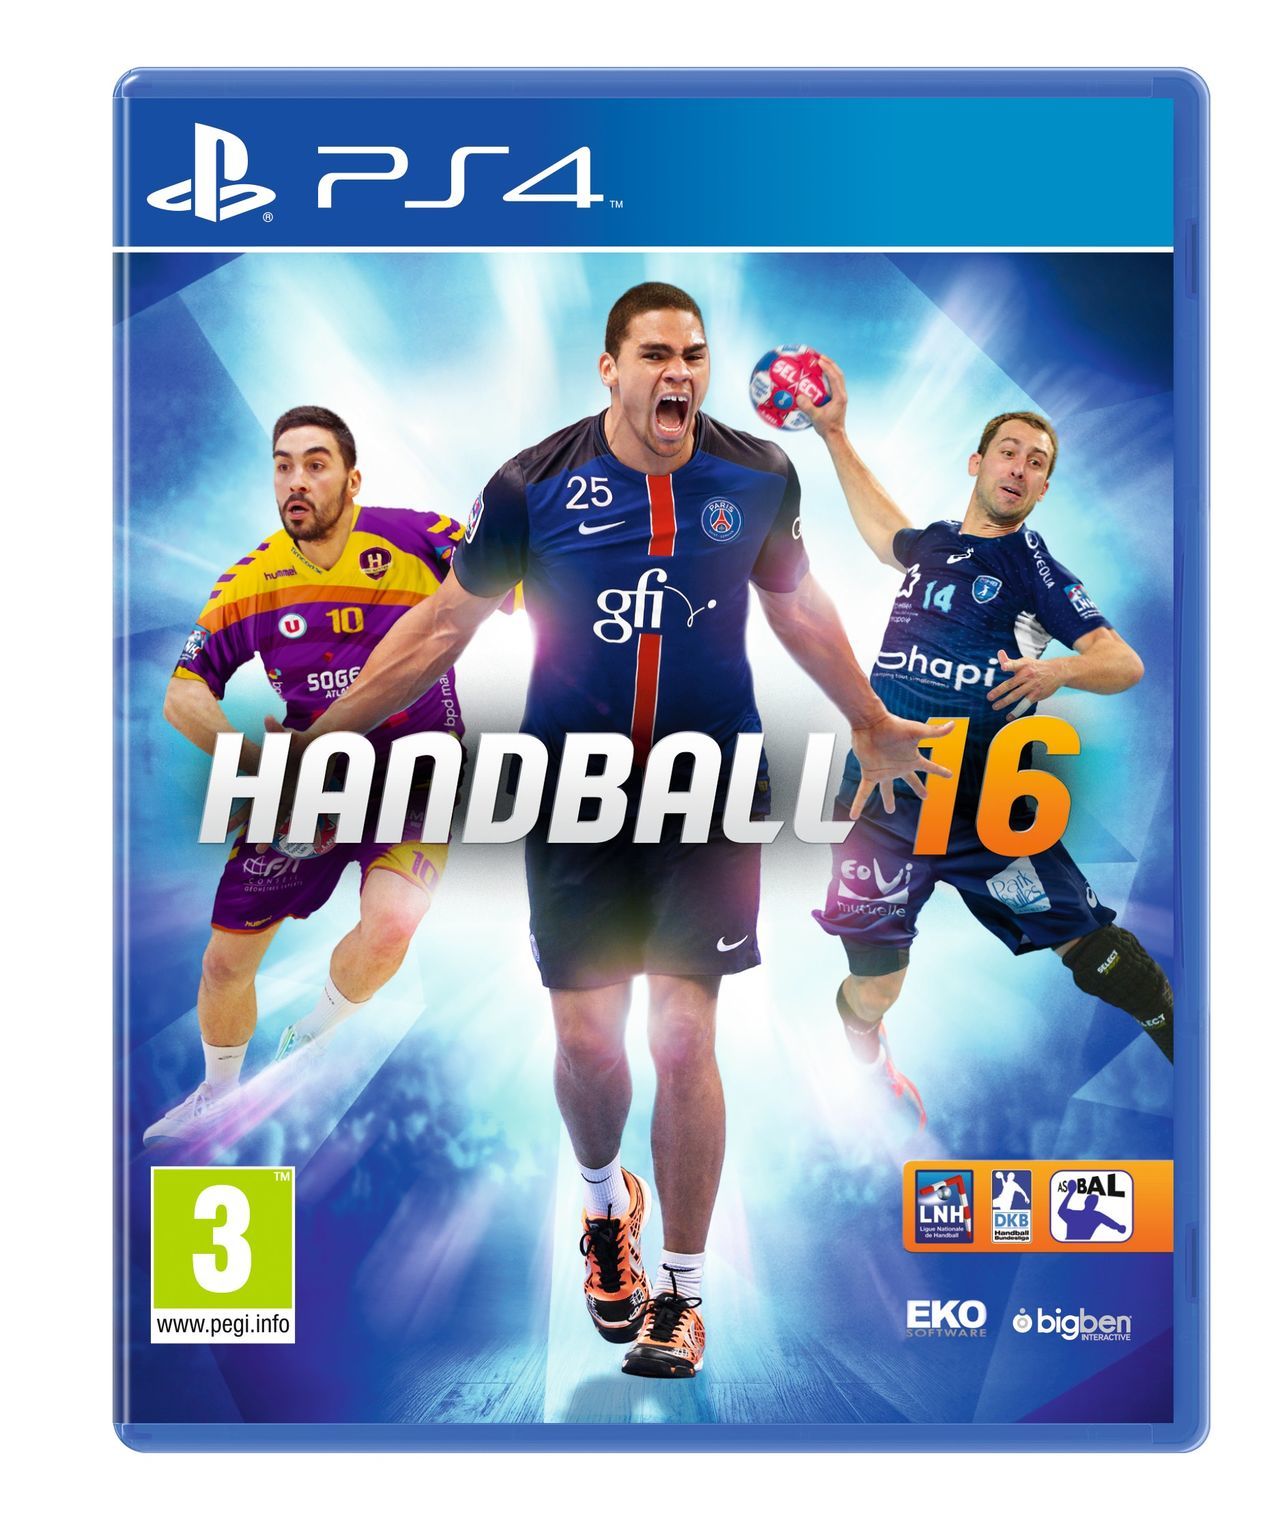 Mínimo melodía letal IHF Handball 2016 - Videojuego (PS4, PSVITA, PC, PS3, Xbox One y Xbox 360)  - Vandal